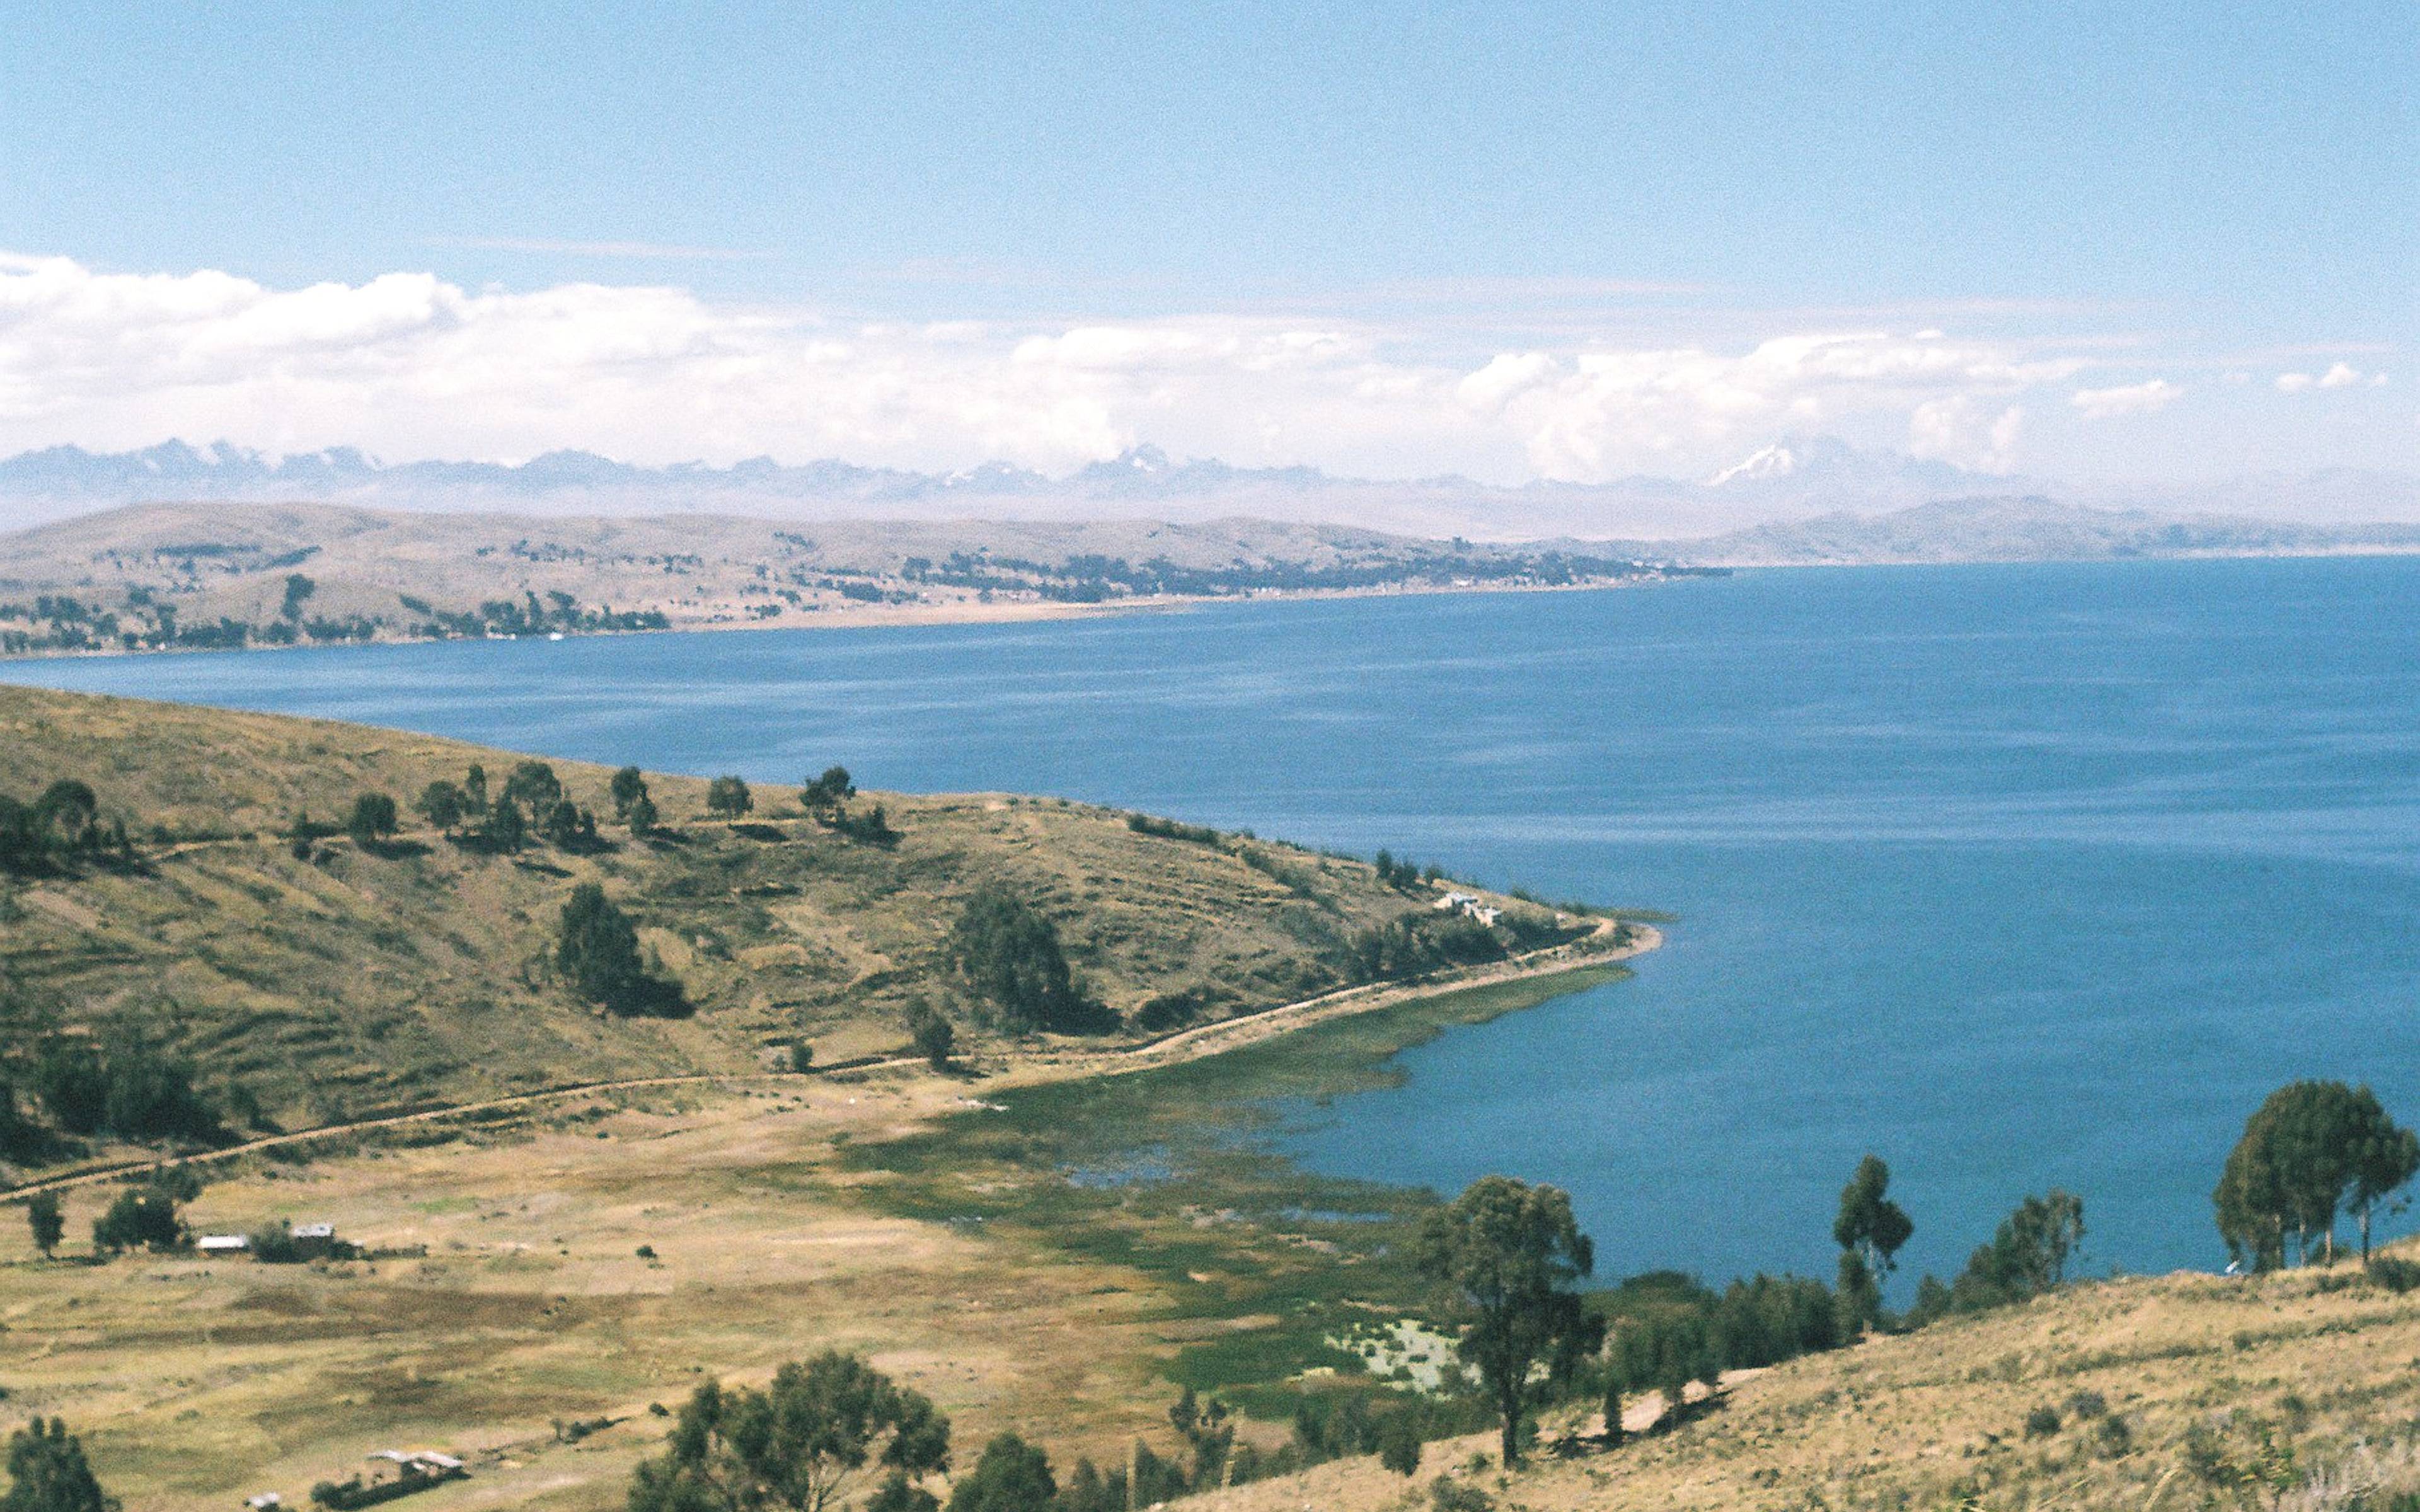 Ausschlafen und weiter zum Titicaca-See